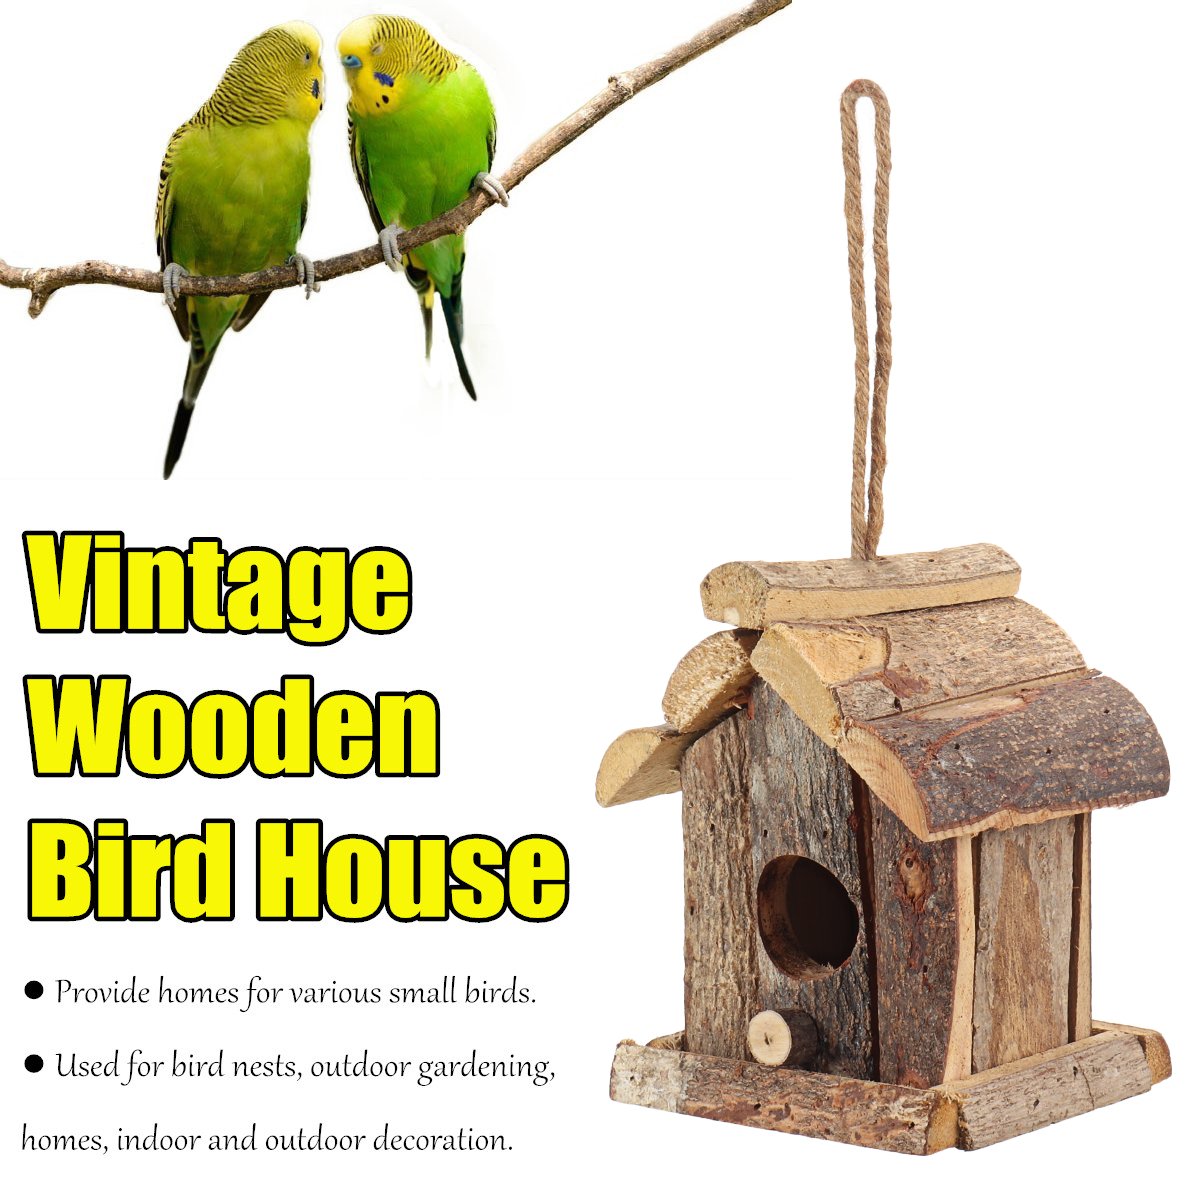 Vintage-Wooden-Bird-House-Nesting-Box-Small-Wild-Birds-Nest-Home-Garden-Decoration-1725292-2